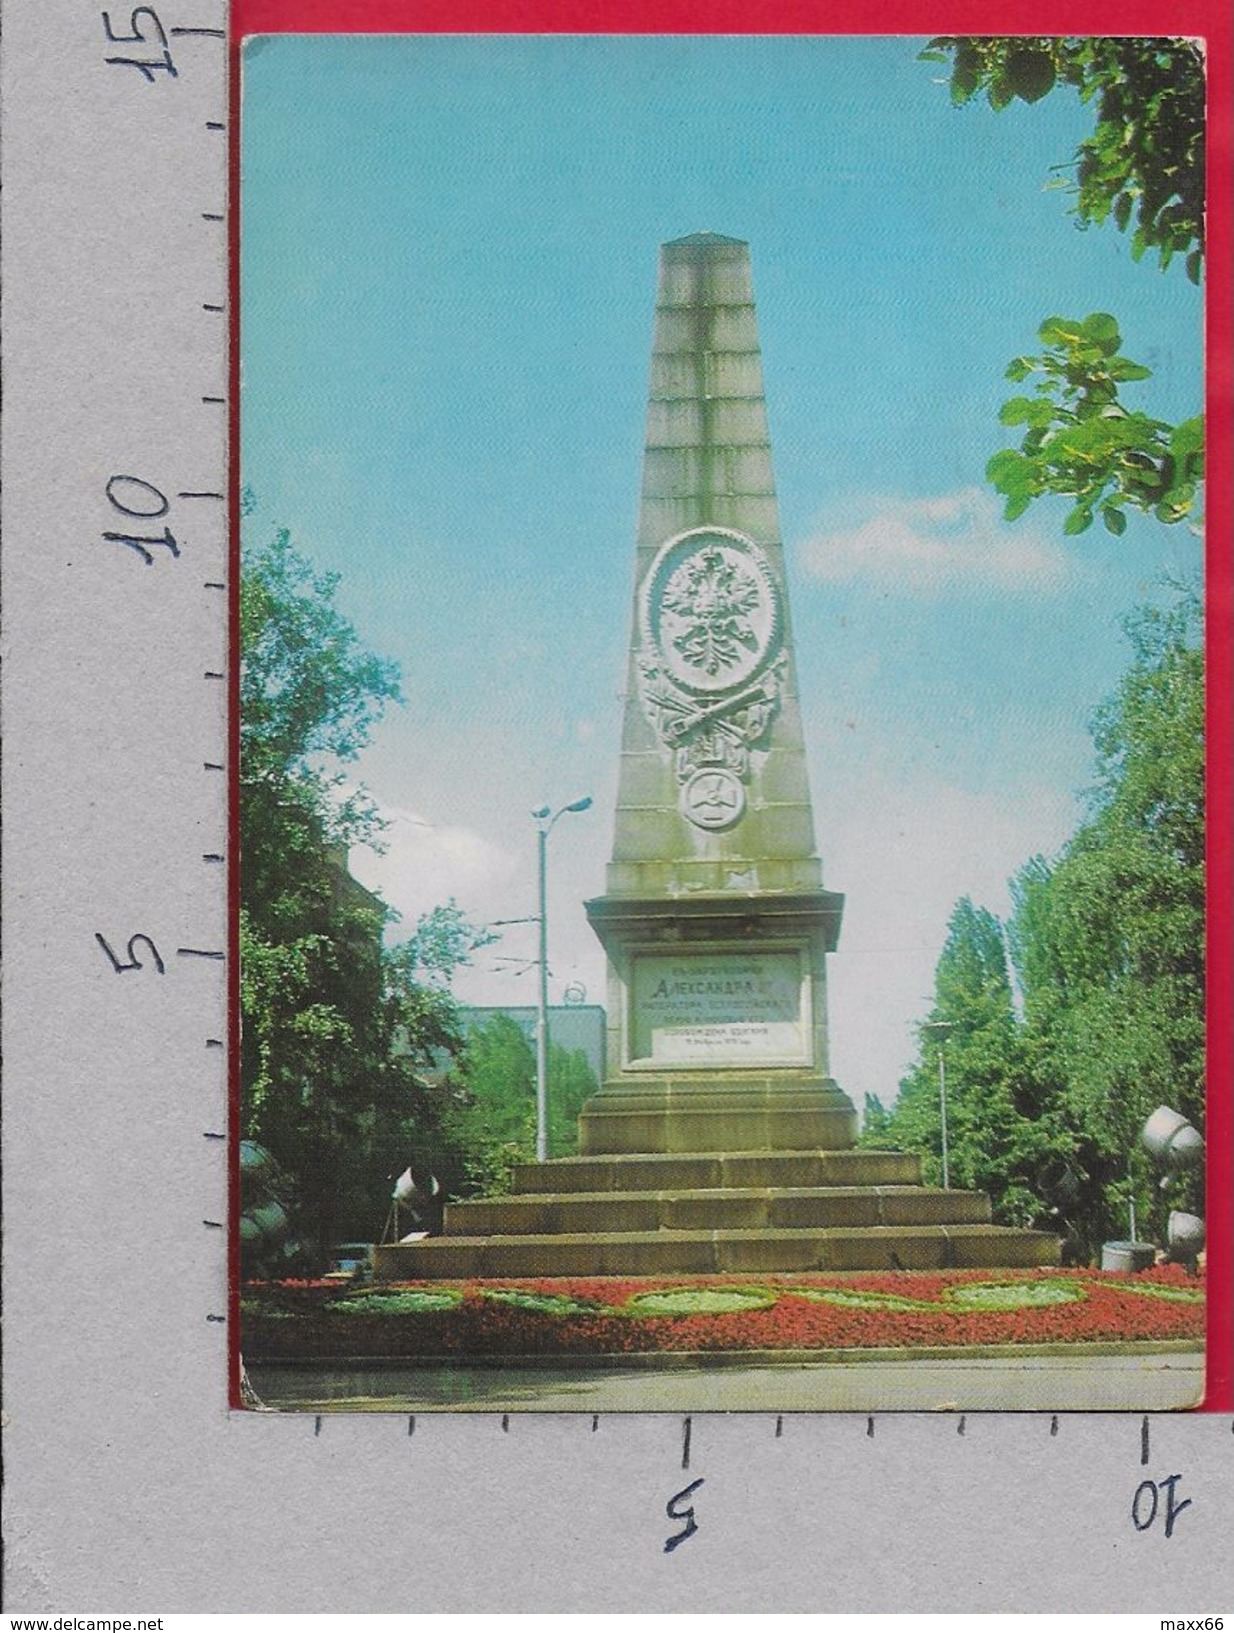 CARTOLINA VG BULGARIA - SOFIA - Le Monument Russe - 10 X 15 - ANN. 19?? - Bulgaria